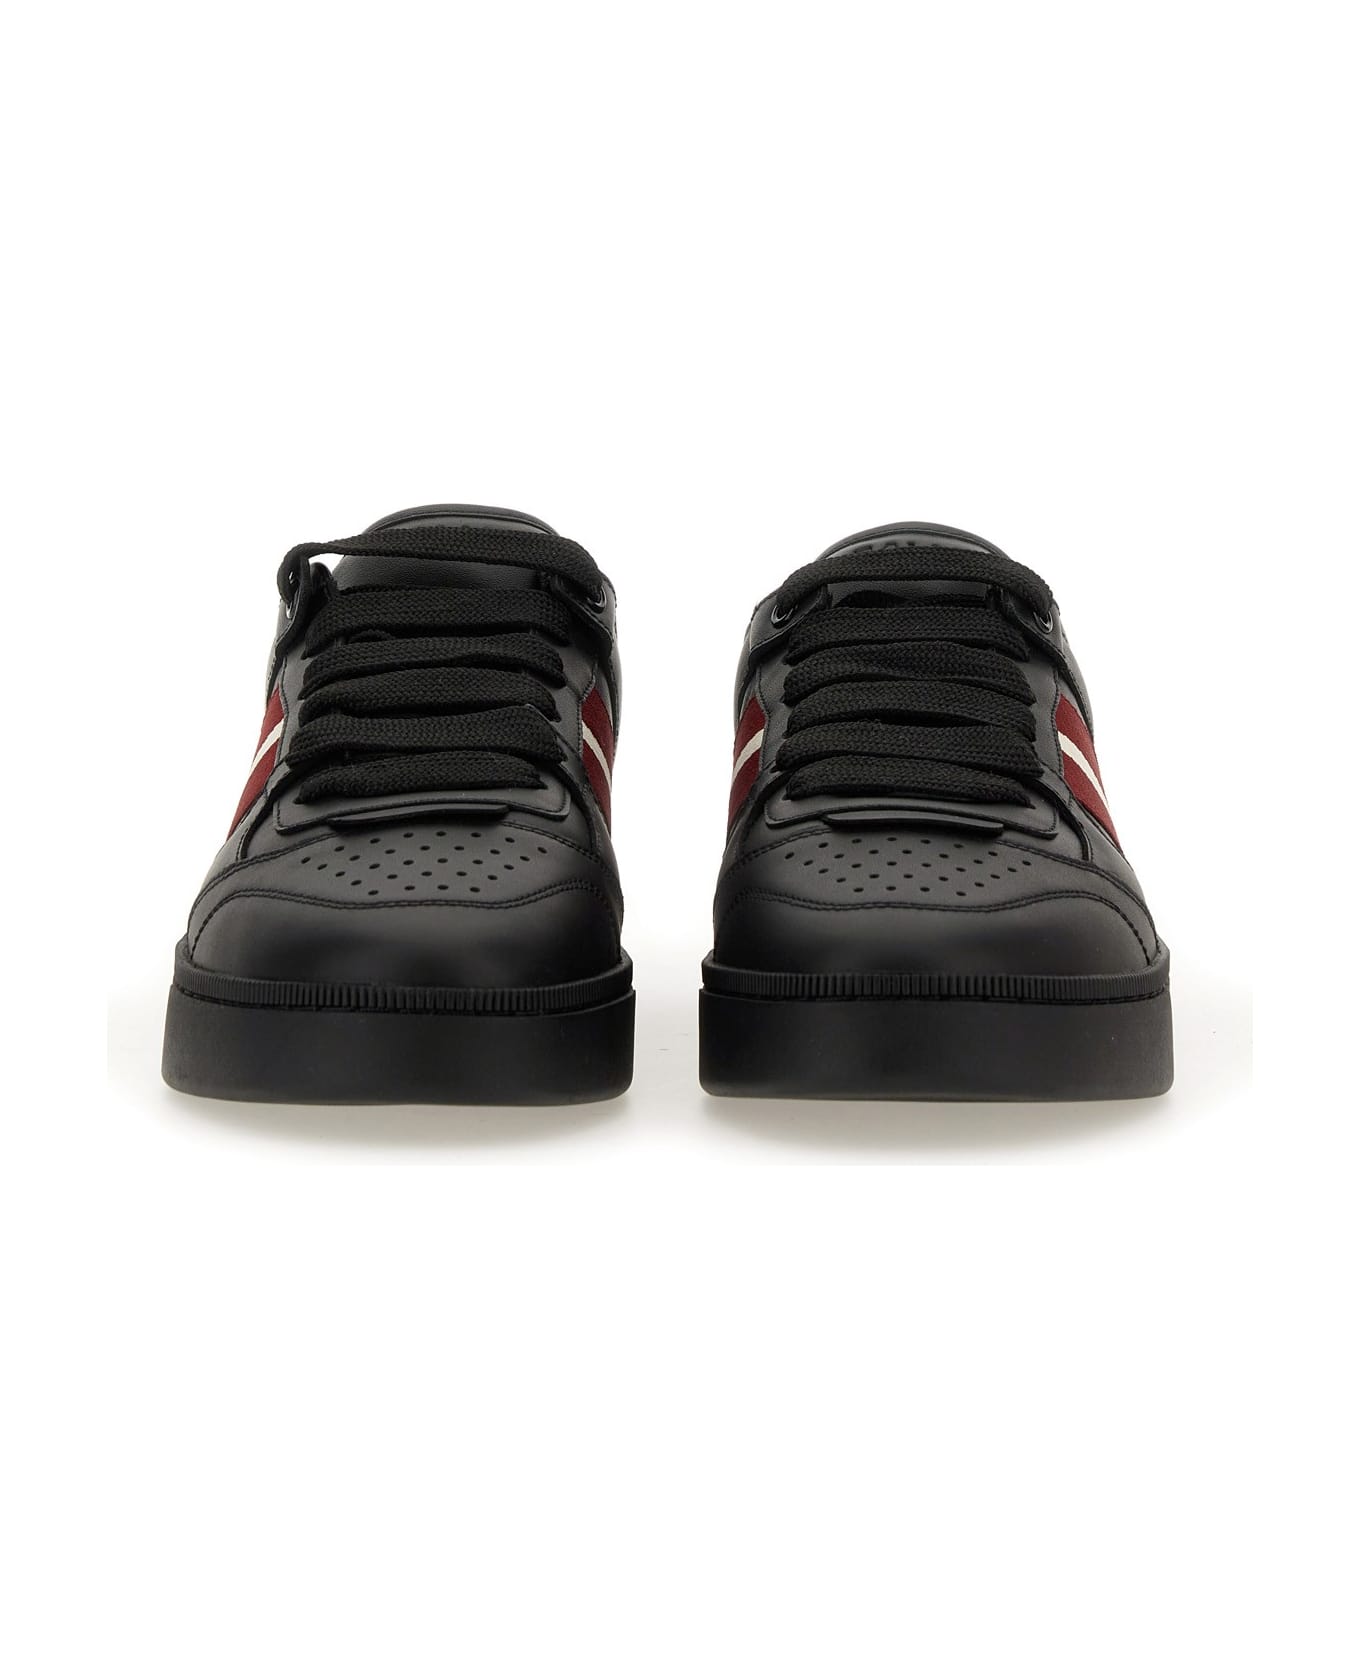 Bally Sneaker 'rebby' - BLACK/RED